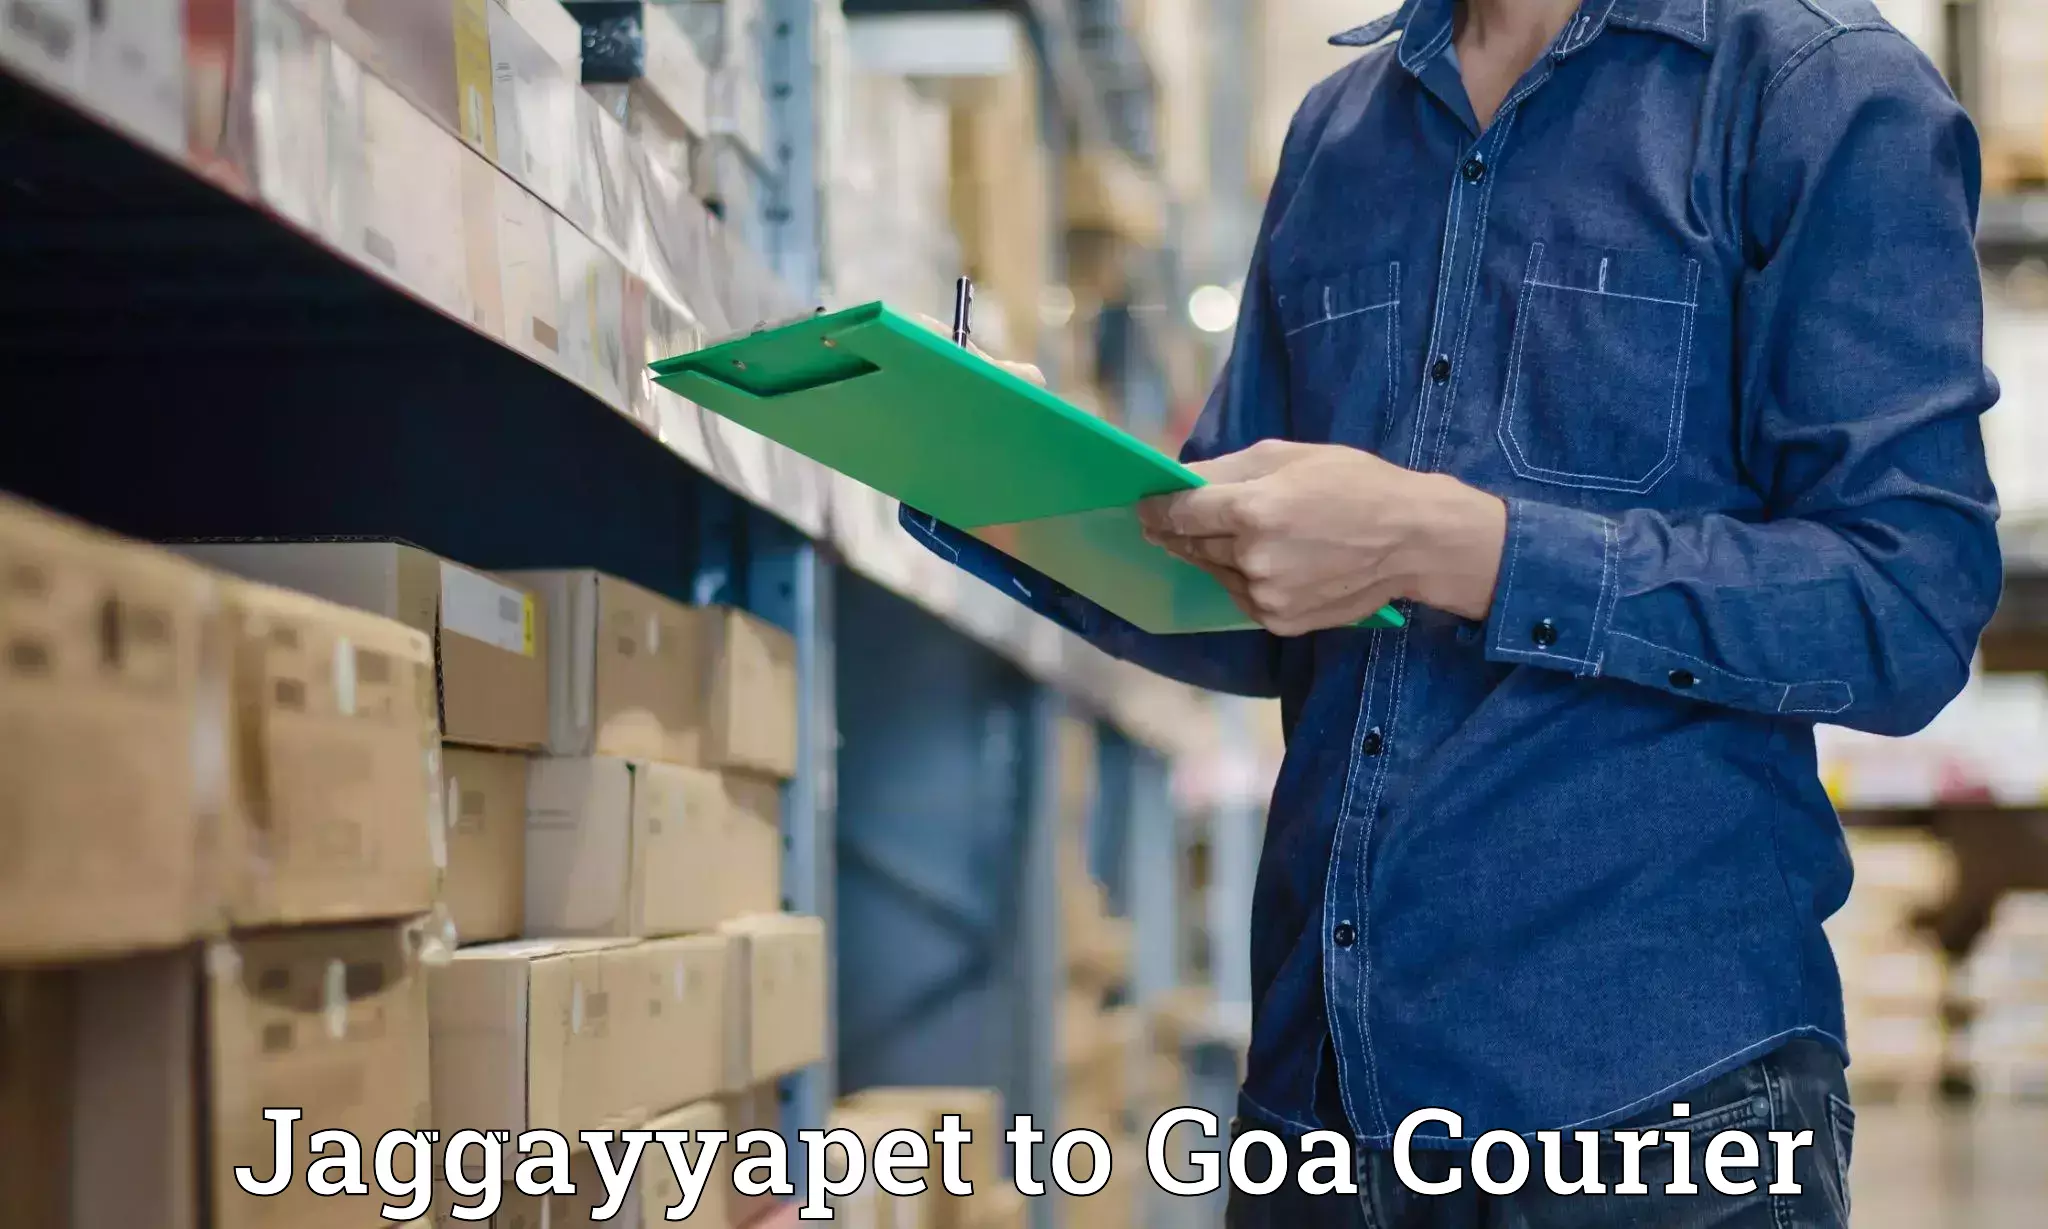 Courier service innovation Jaggayyapet to NIT Goa